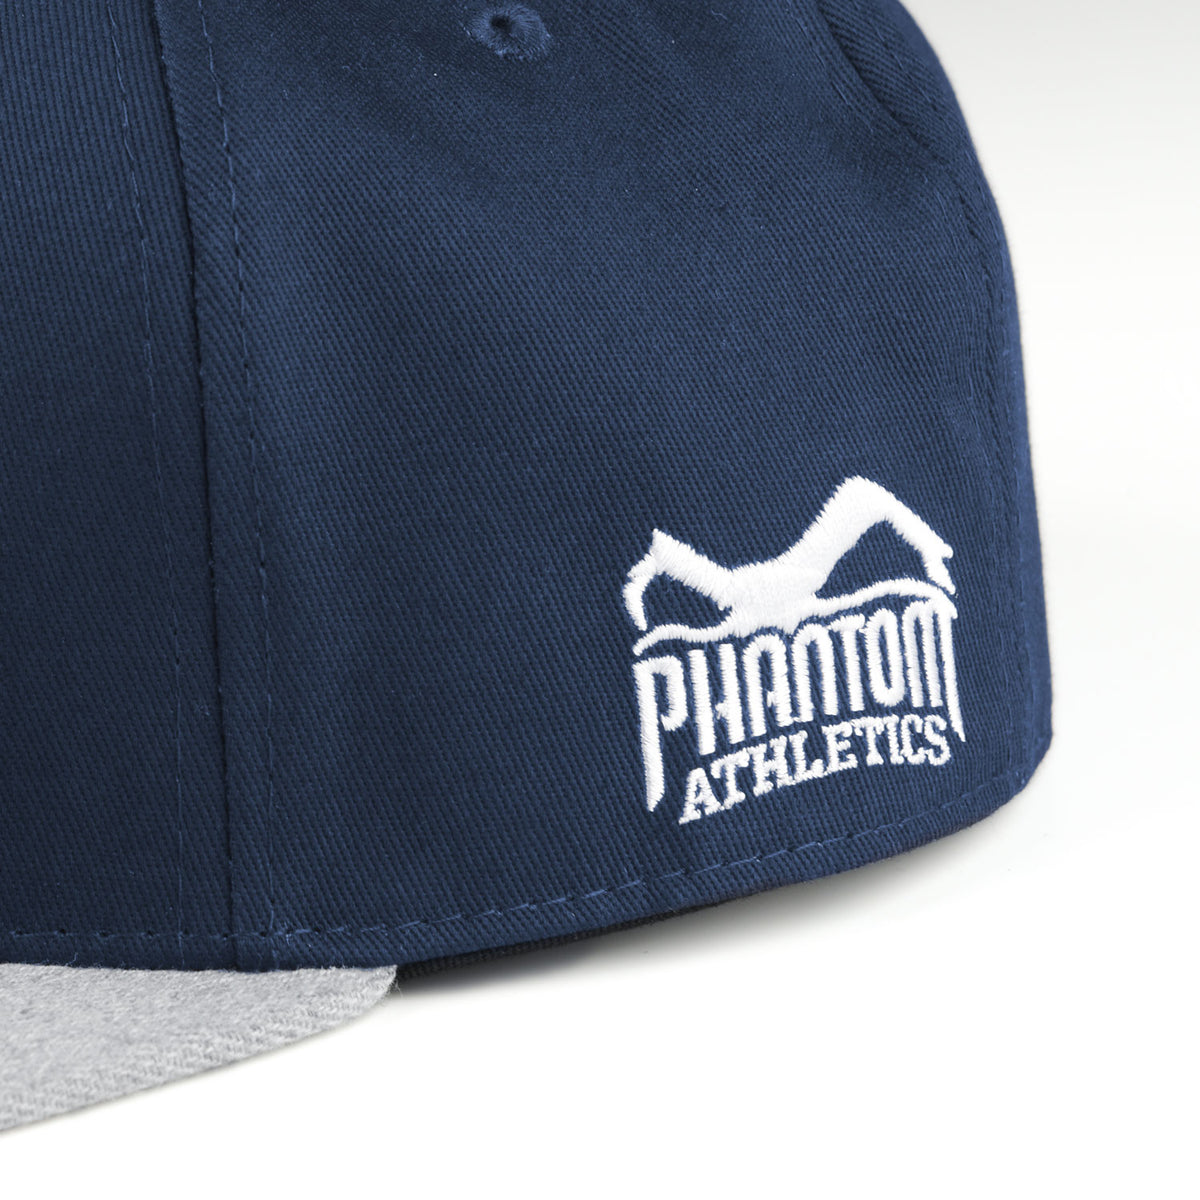 Phantom Cap für Kampfsportler. Navyblau/Graue Basecap mit flachem Schirm und hochwertig gesticktem Phantom Athletics Logo. Ideal für alle MMA Kämpfer, Boxer, Thaiboxer oder Kickboxer.